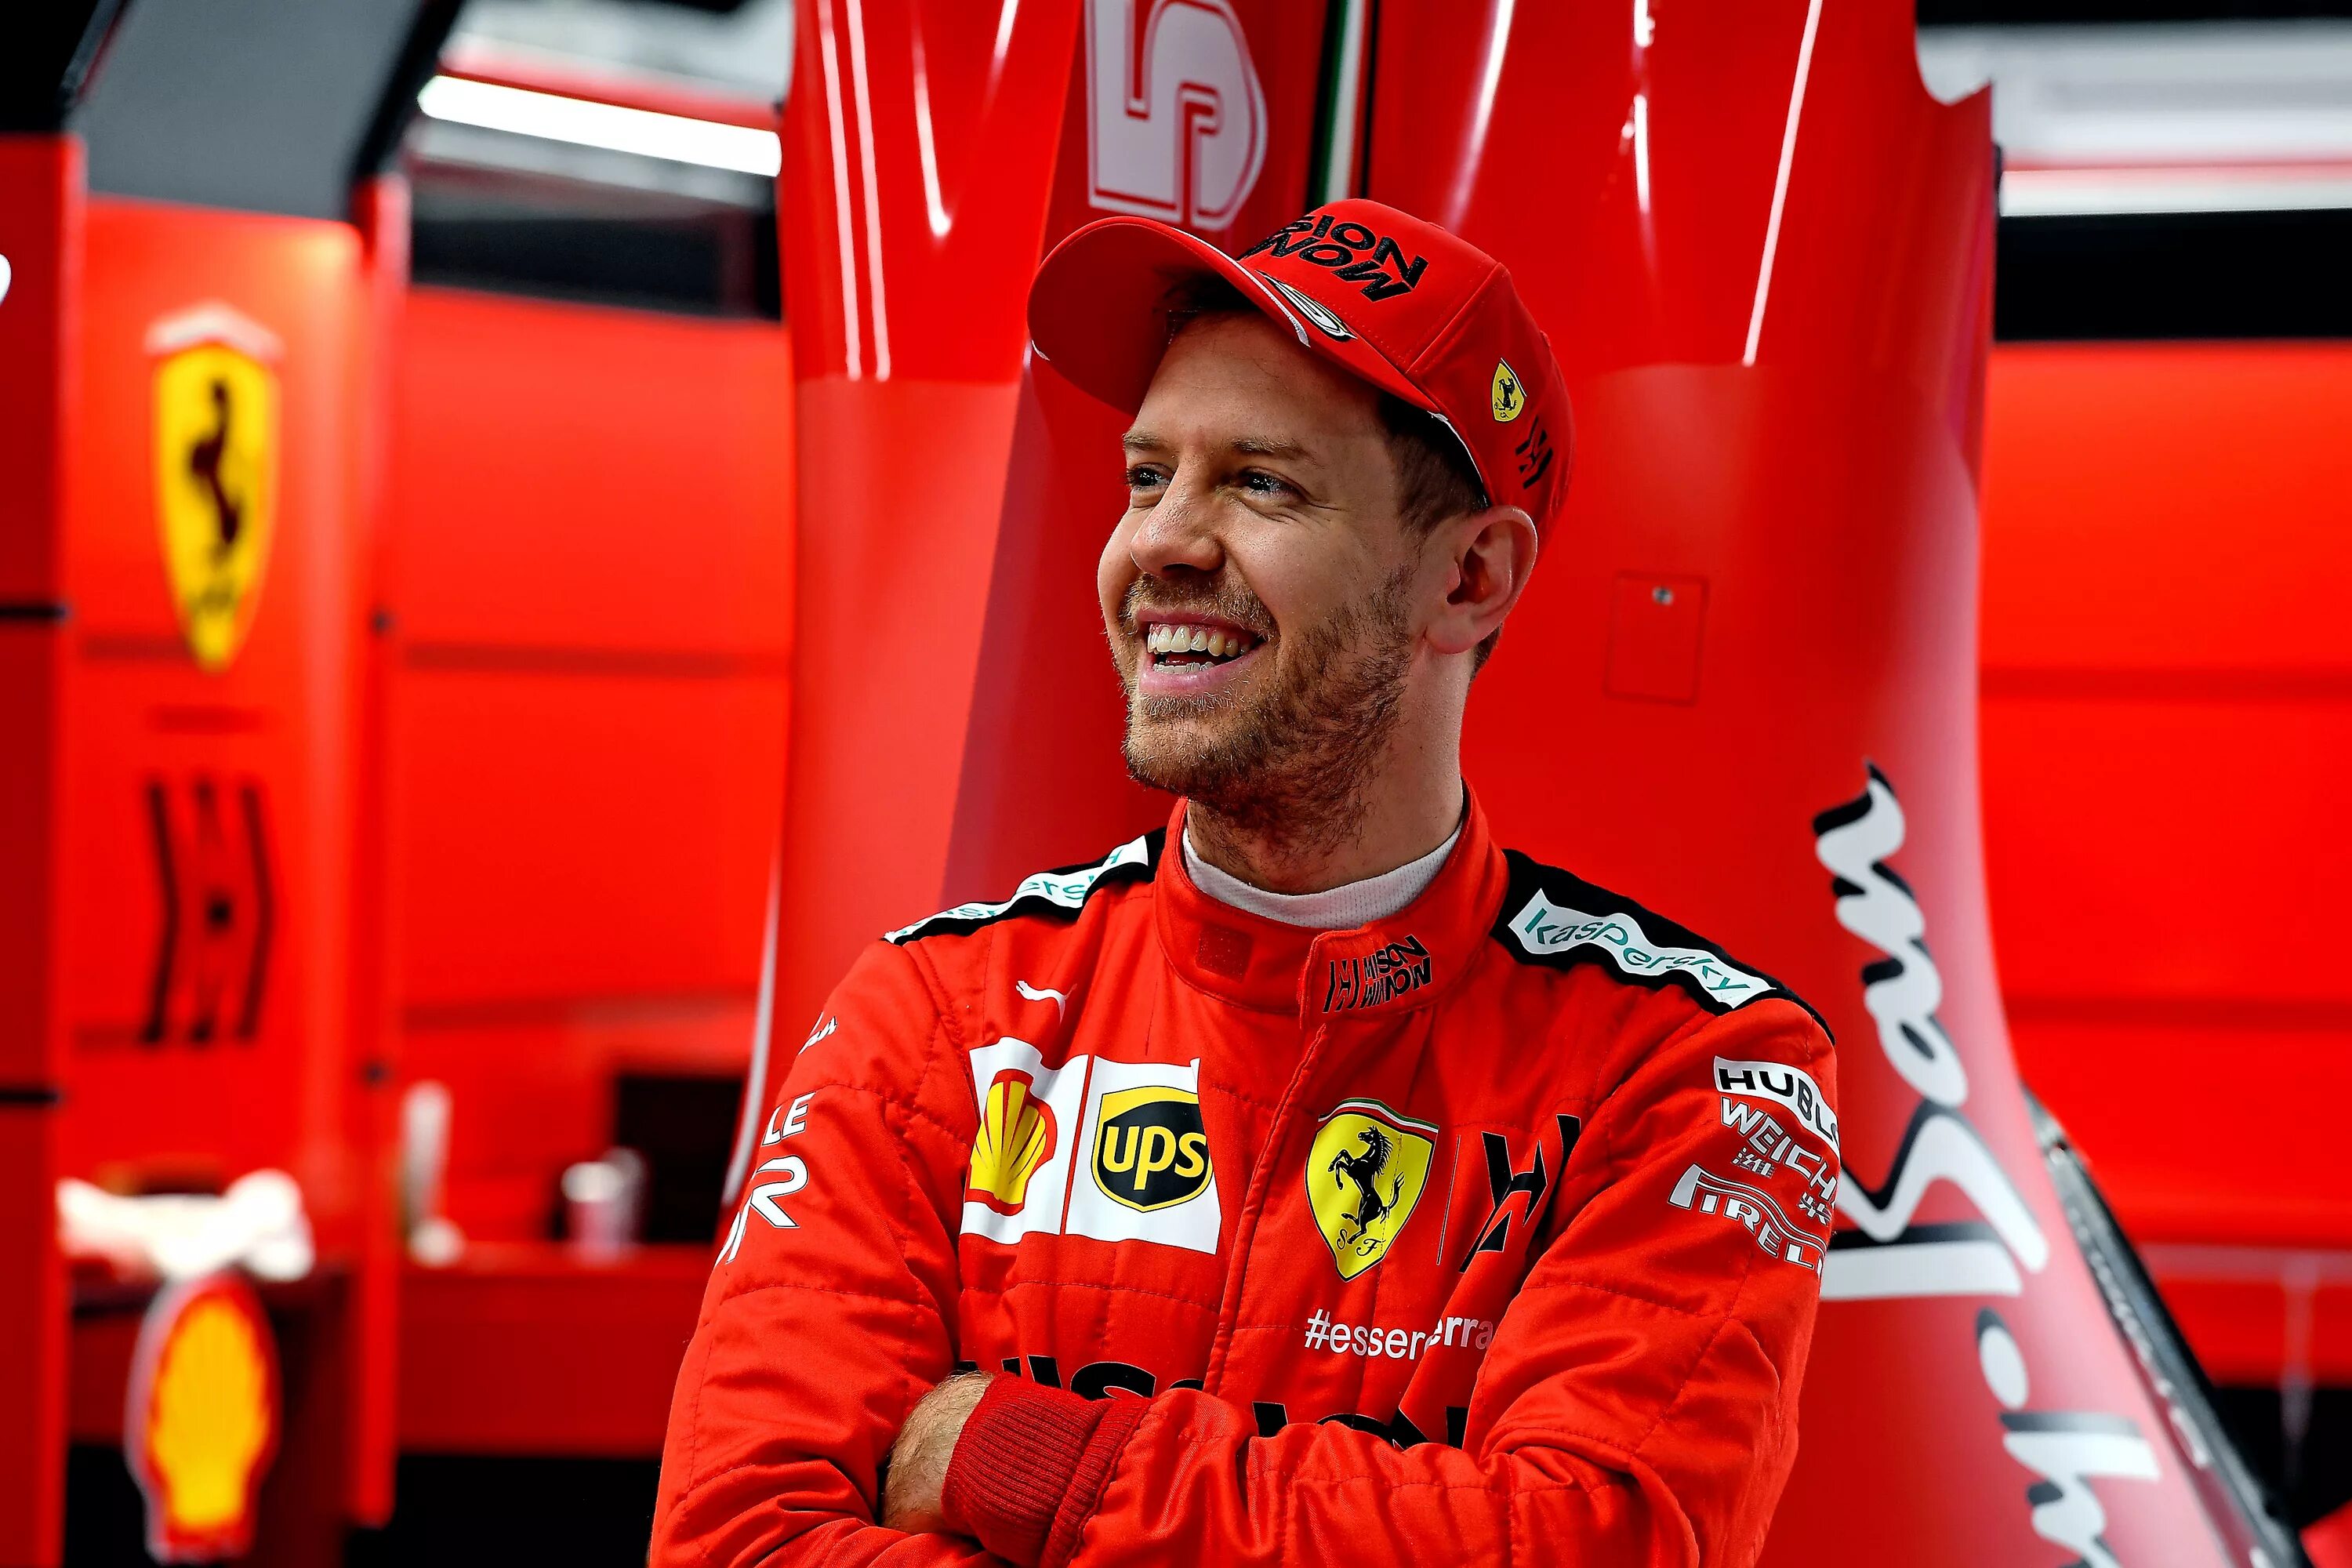 Самые известные пилоты формулы 1. Себастьян Феттель. Себастьян Феттель 2020. Формула 1 Себастьян Феттель. Sebastian Vettel гонщик формулы 1.